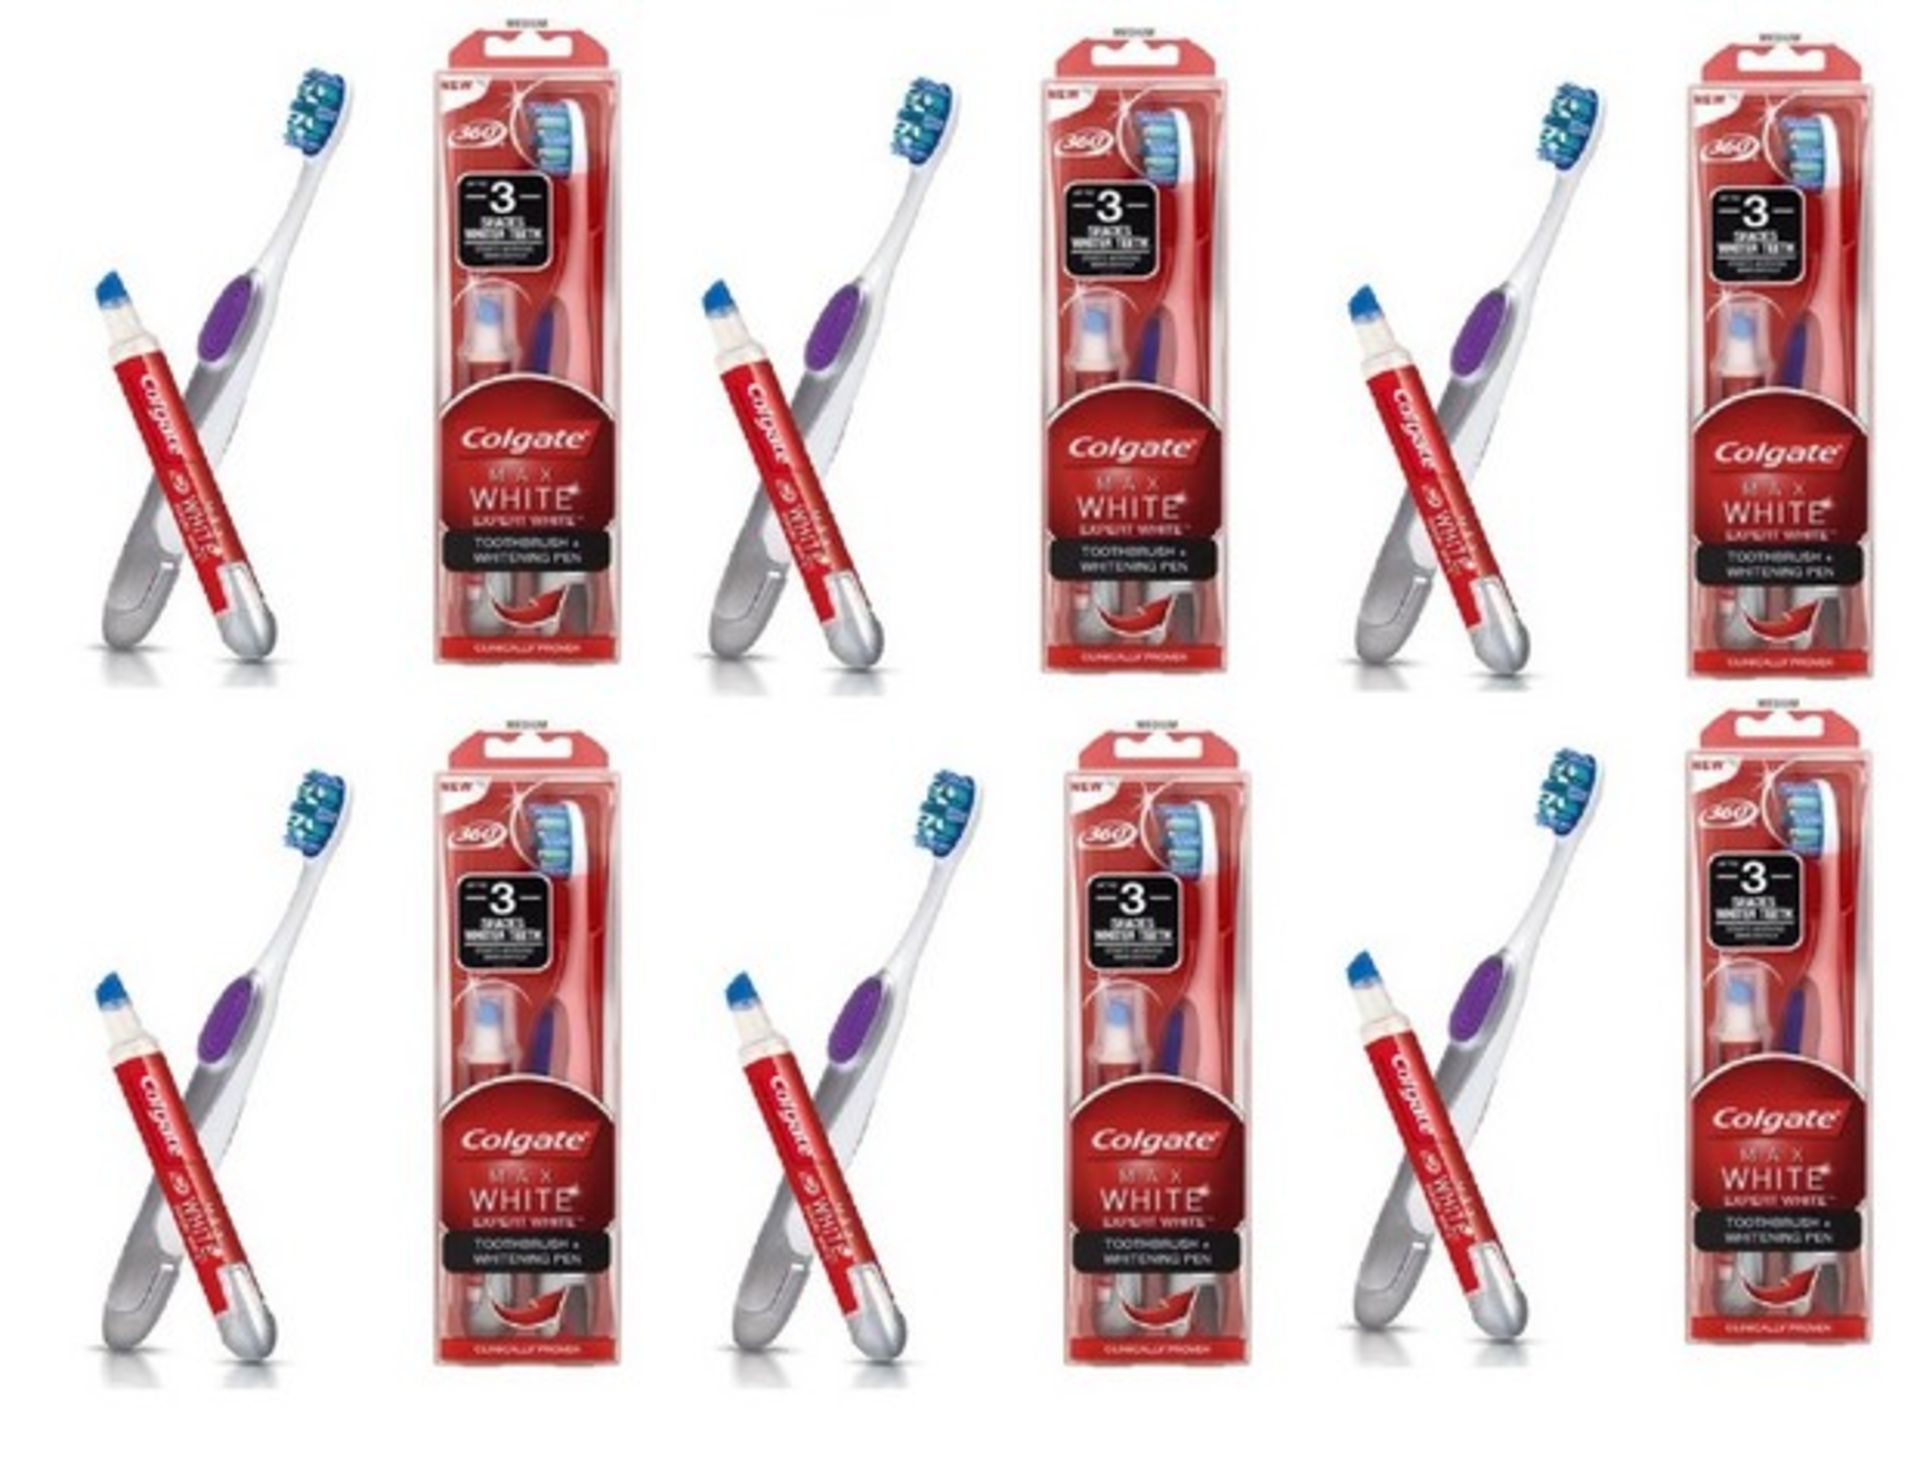 V Brand New 6 x Colgate Max White Expert White Toothbrush and Whitening Pen - Waitrose Price £12.50